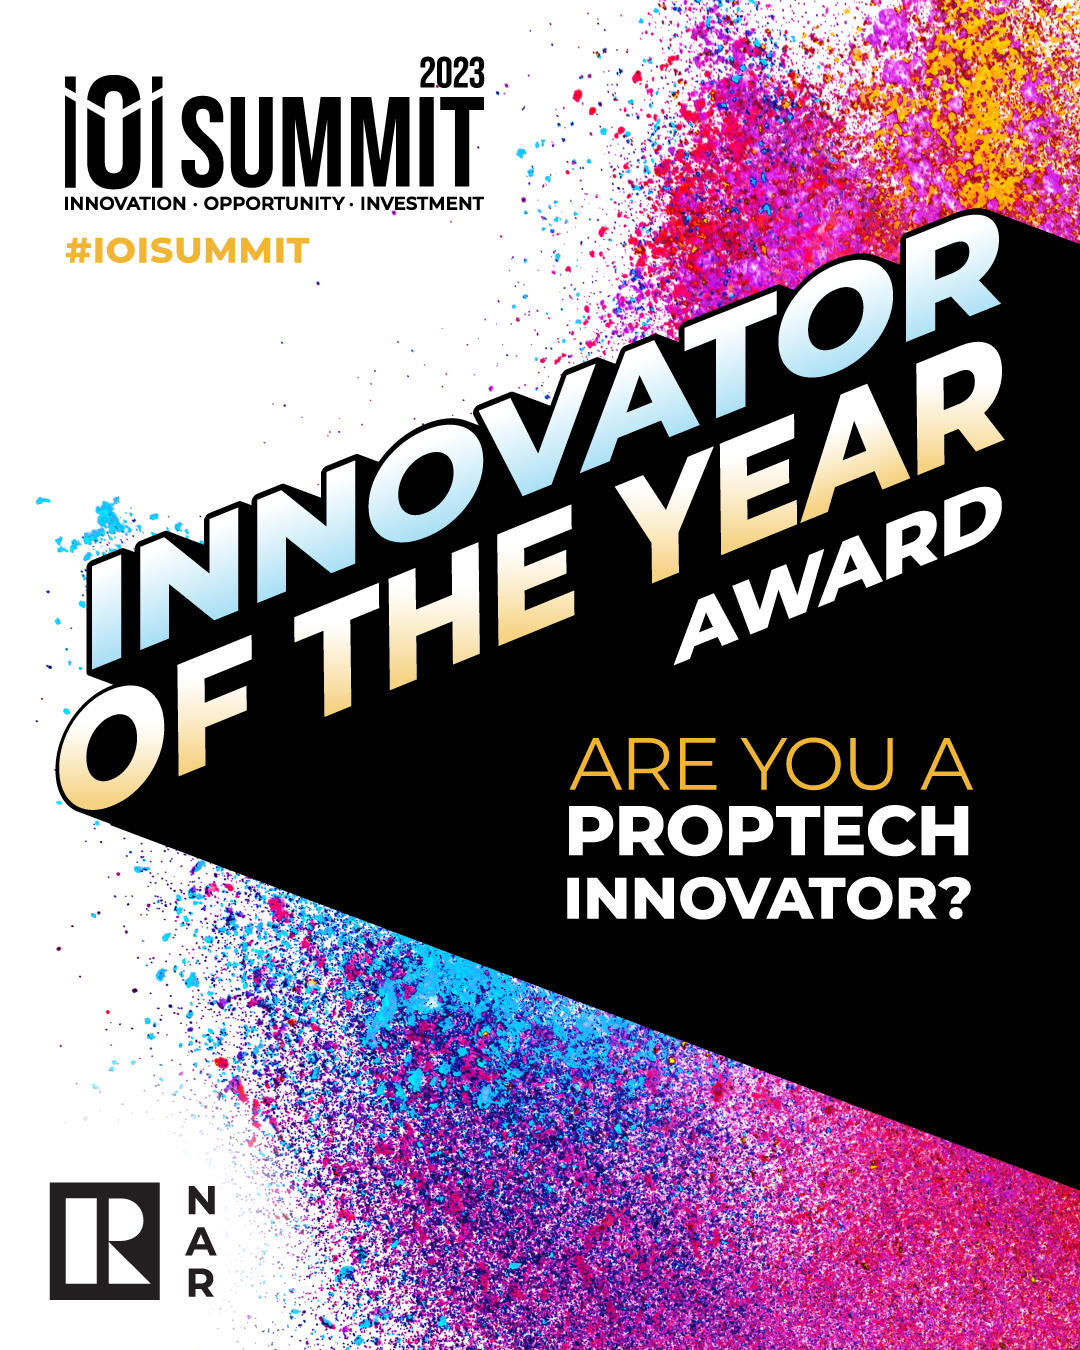 iOi Summit's first Innovator of the Year Award, iOi 2023